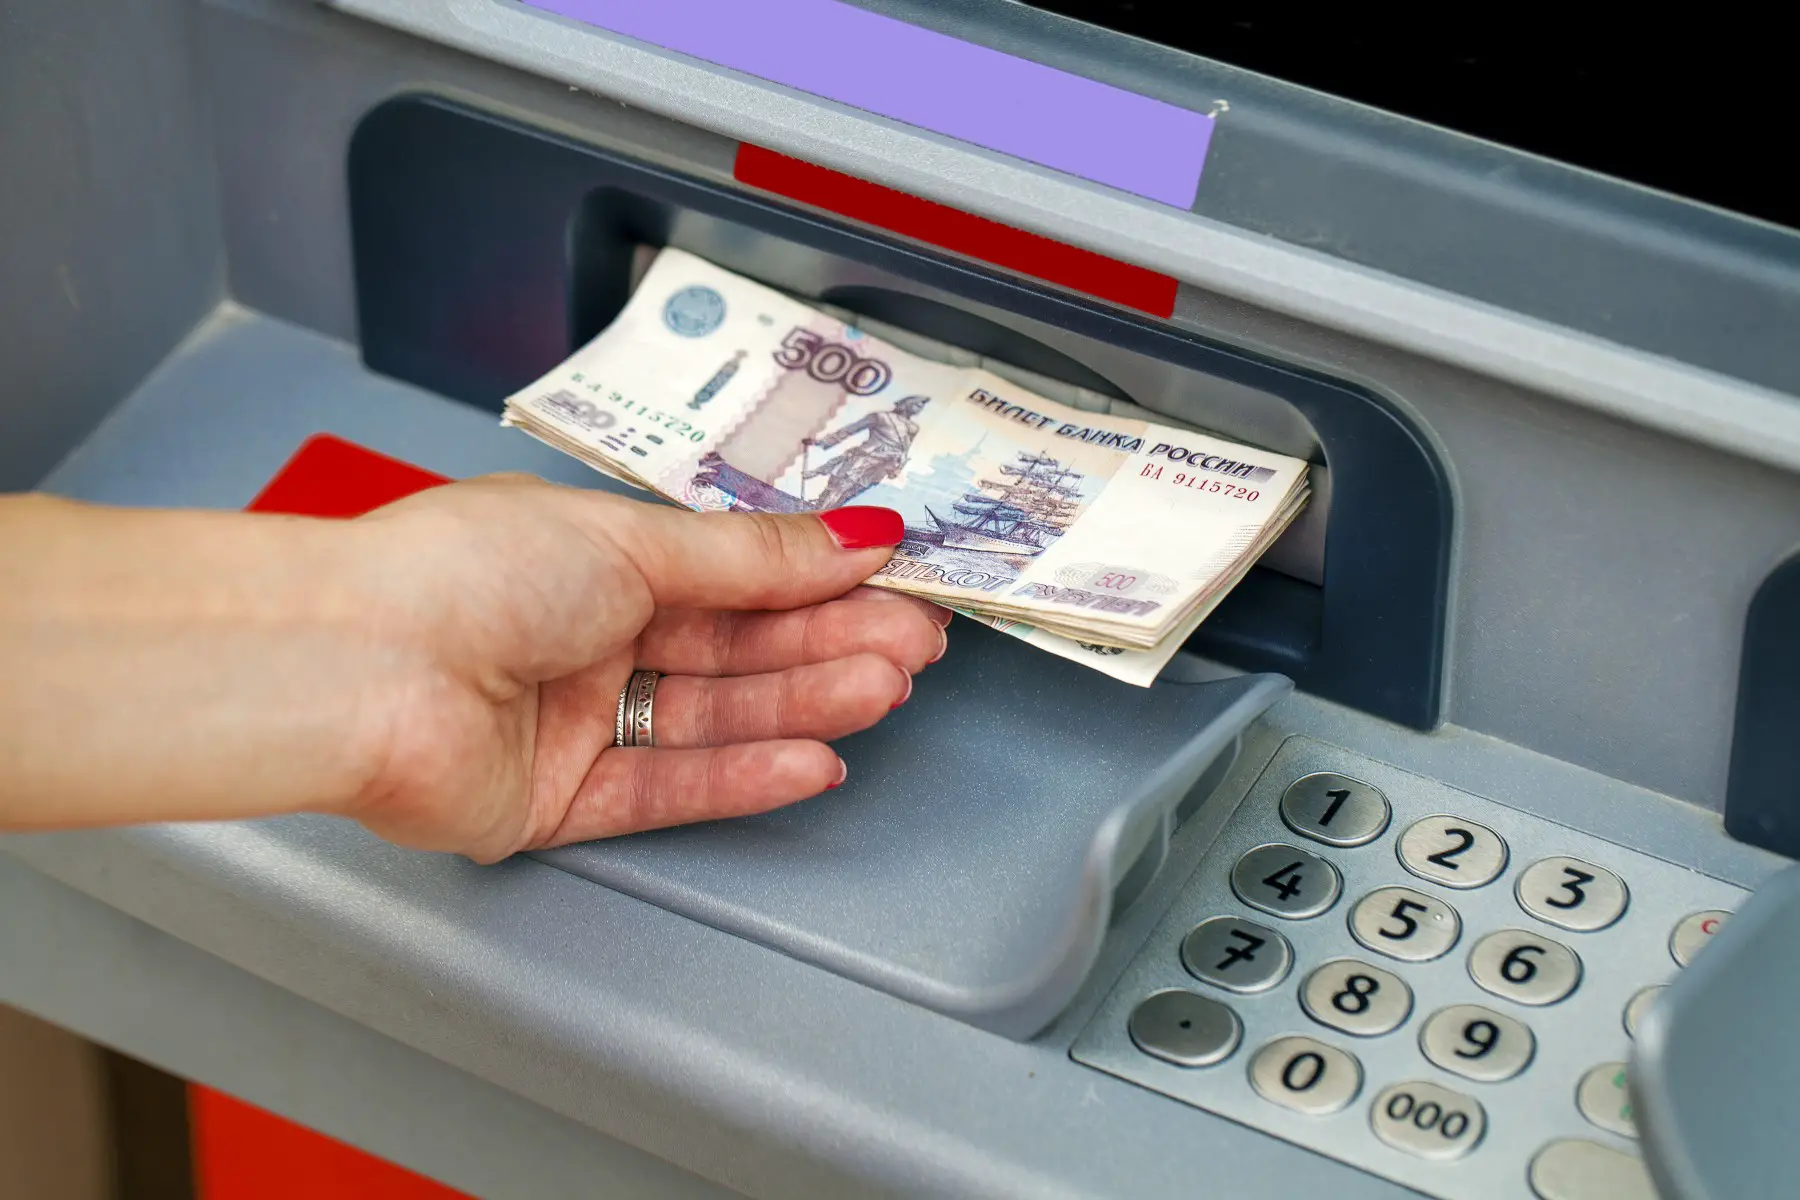 Russian bank account, woman using cash machine in Russia